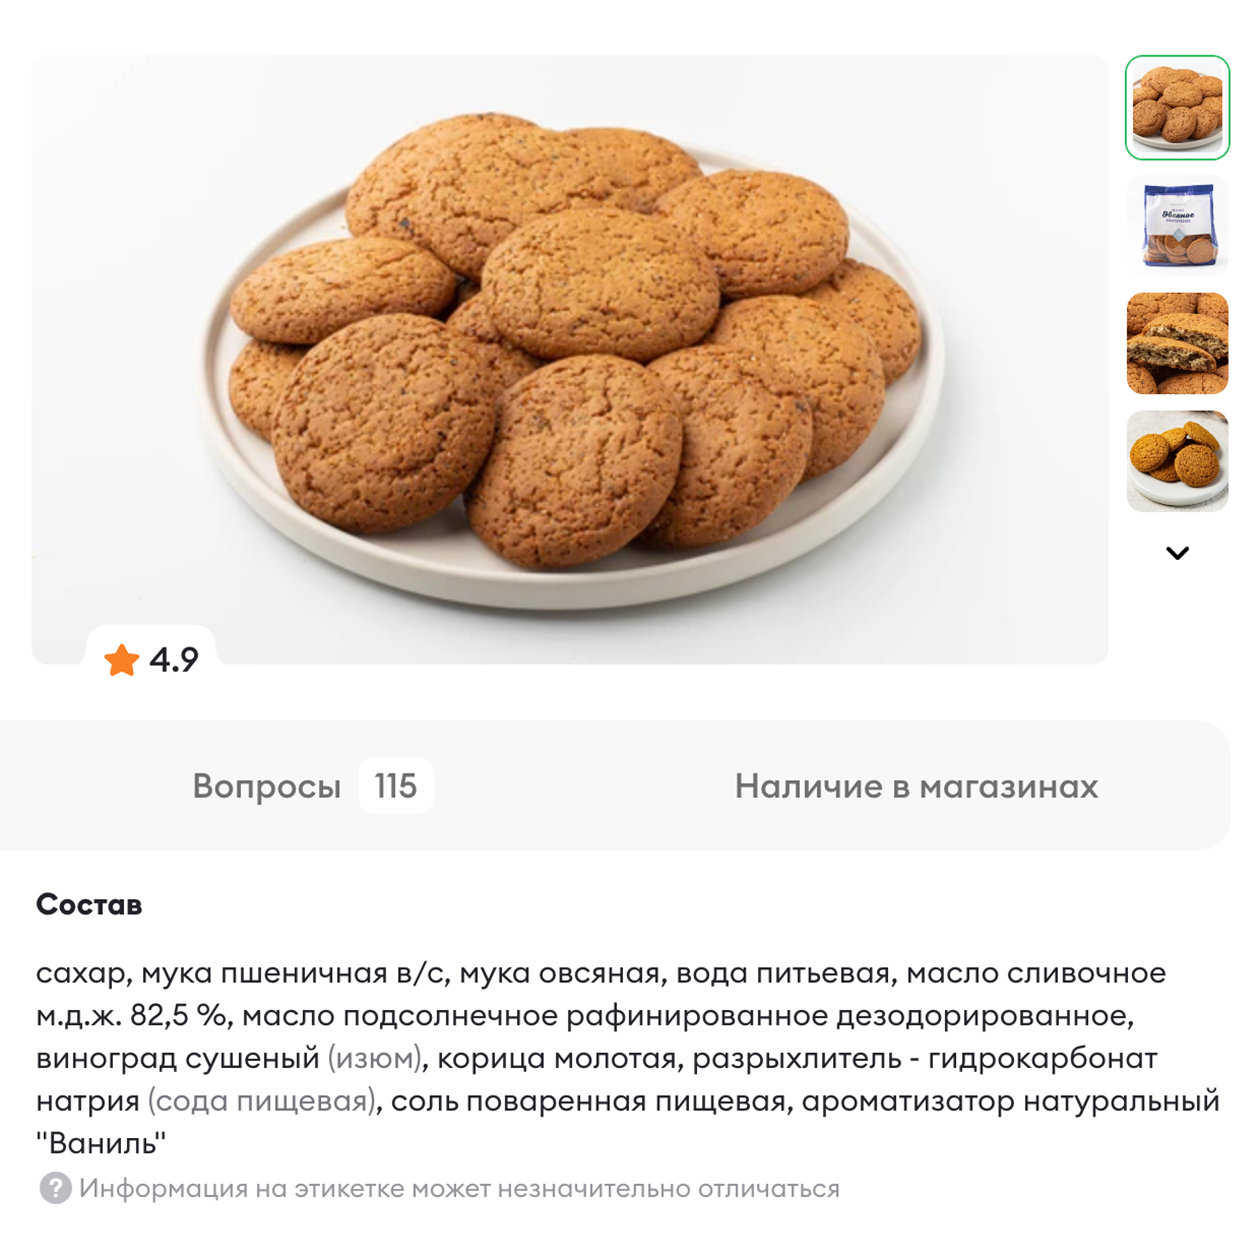 В этом печенье сахар на первом месте, значит, его в продукте очень много. Источник: vkusvill.ru